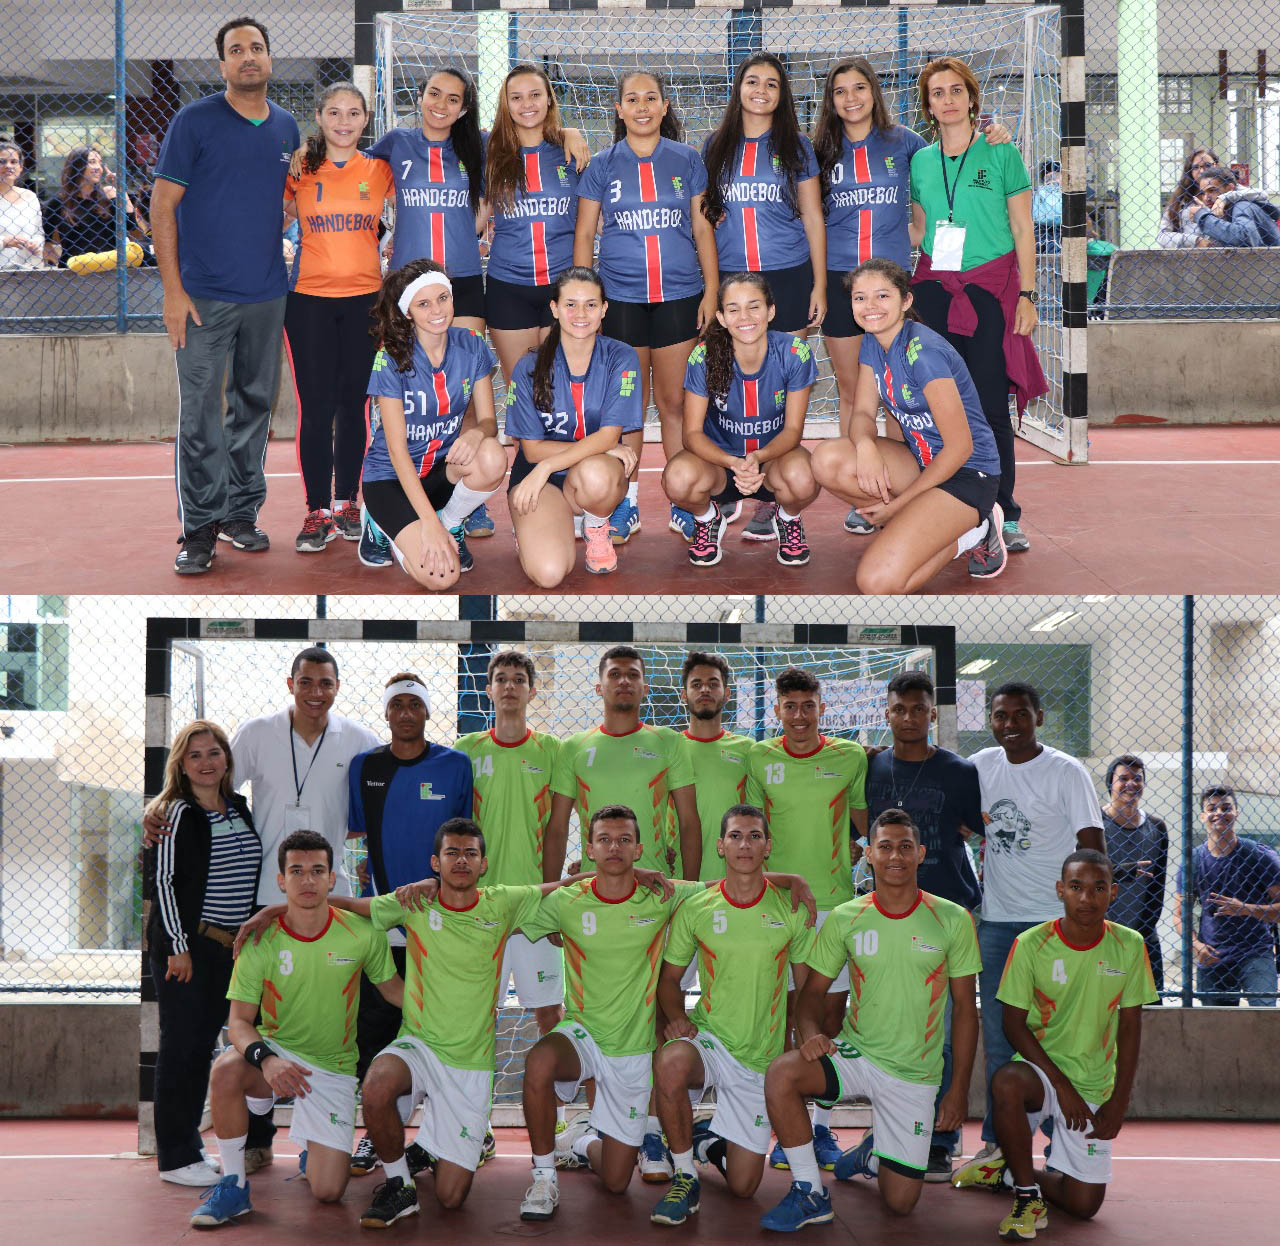 Times de Handebol do IFNMG foram campeões no masculino, com o Campus Pirapora, e no feminino, com o Campus Araçuaí